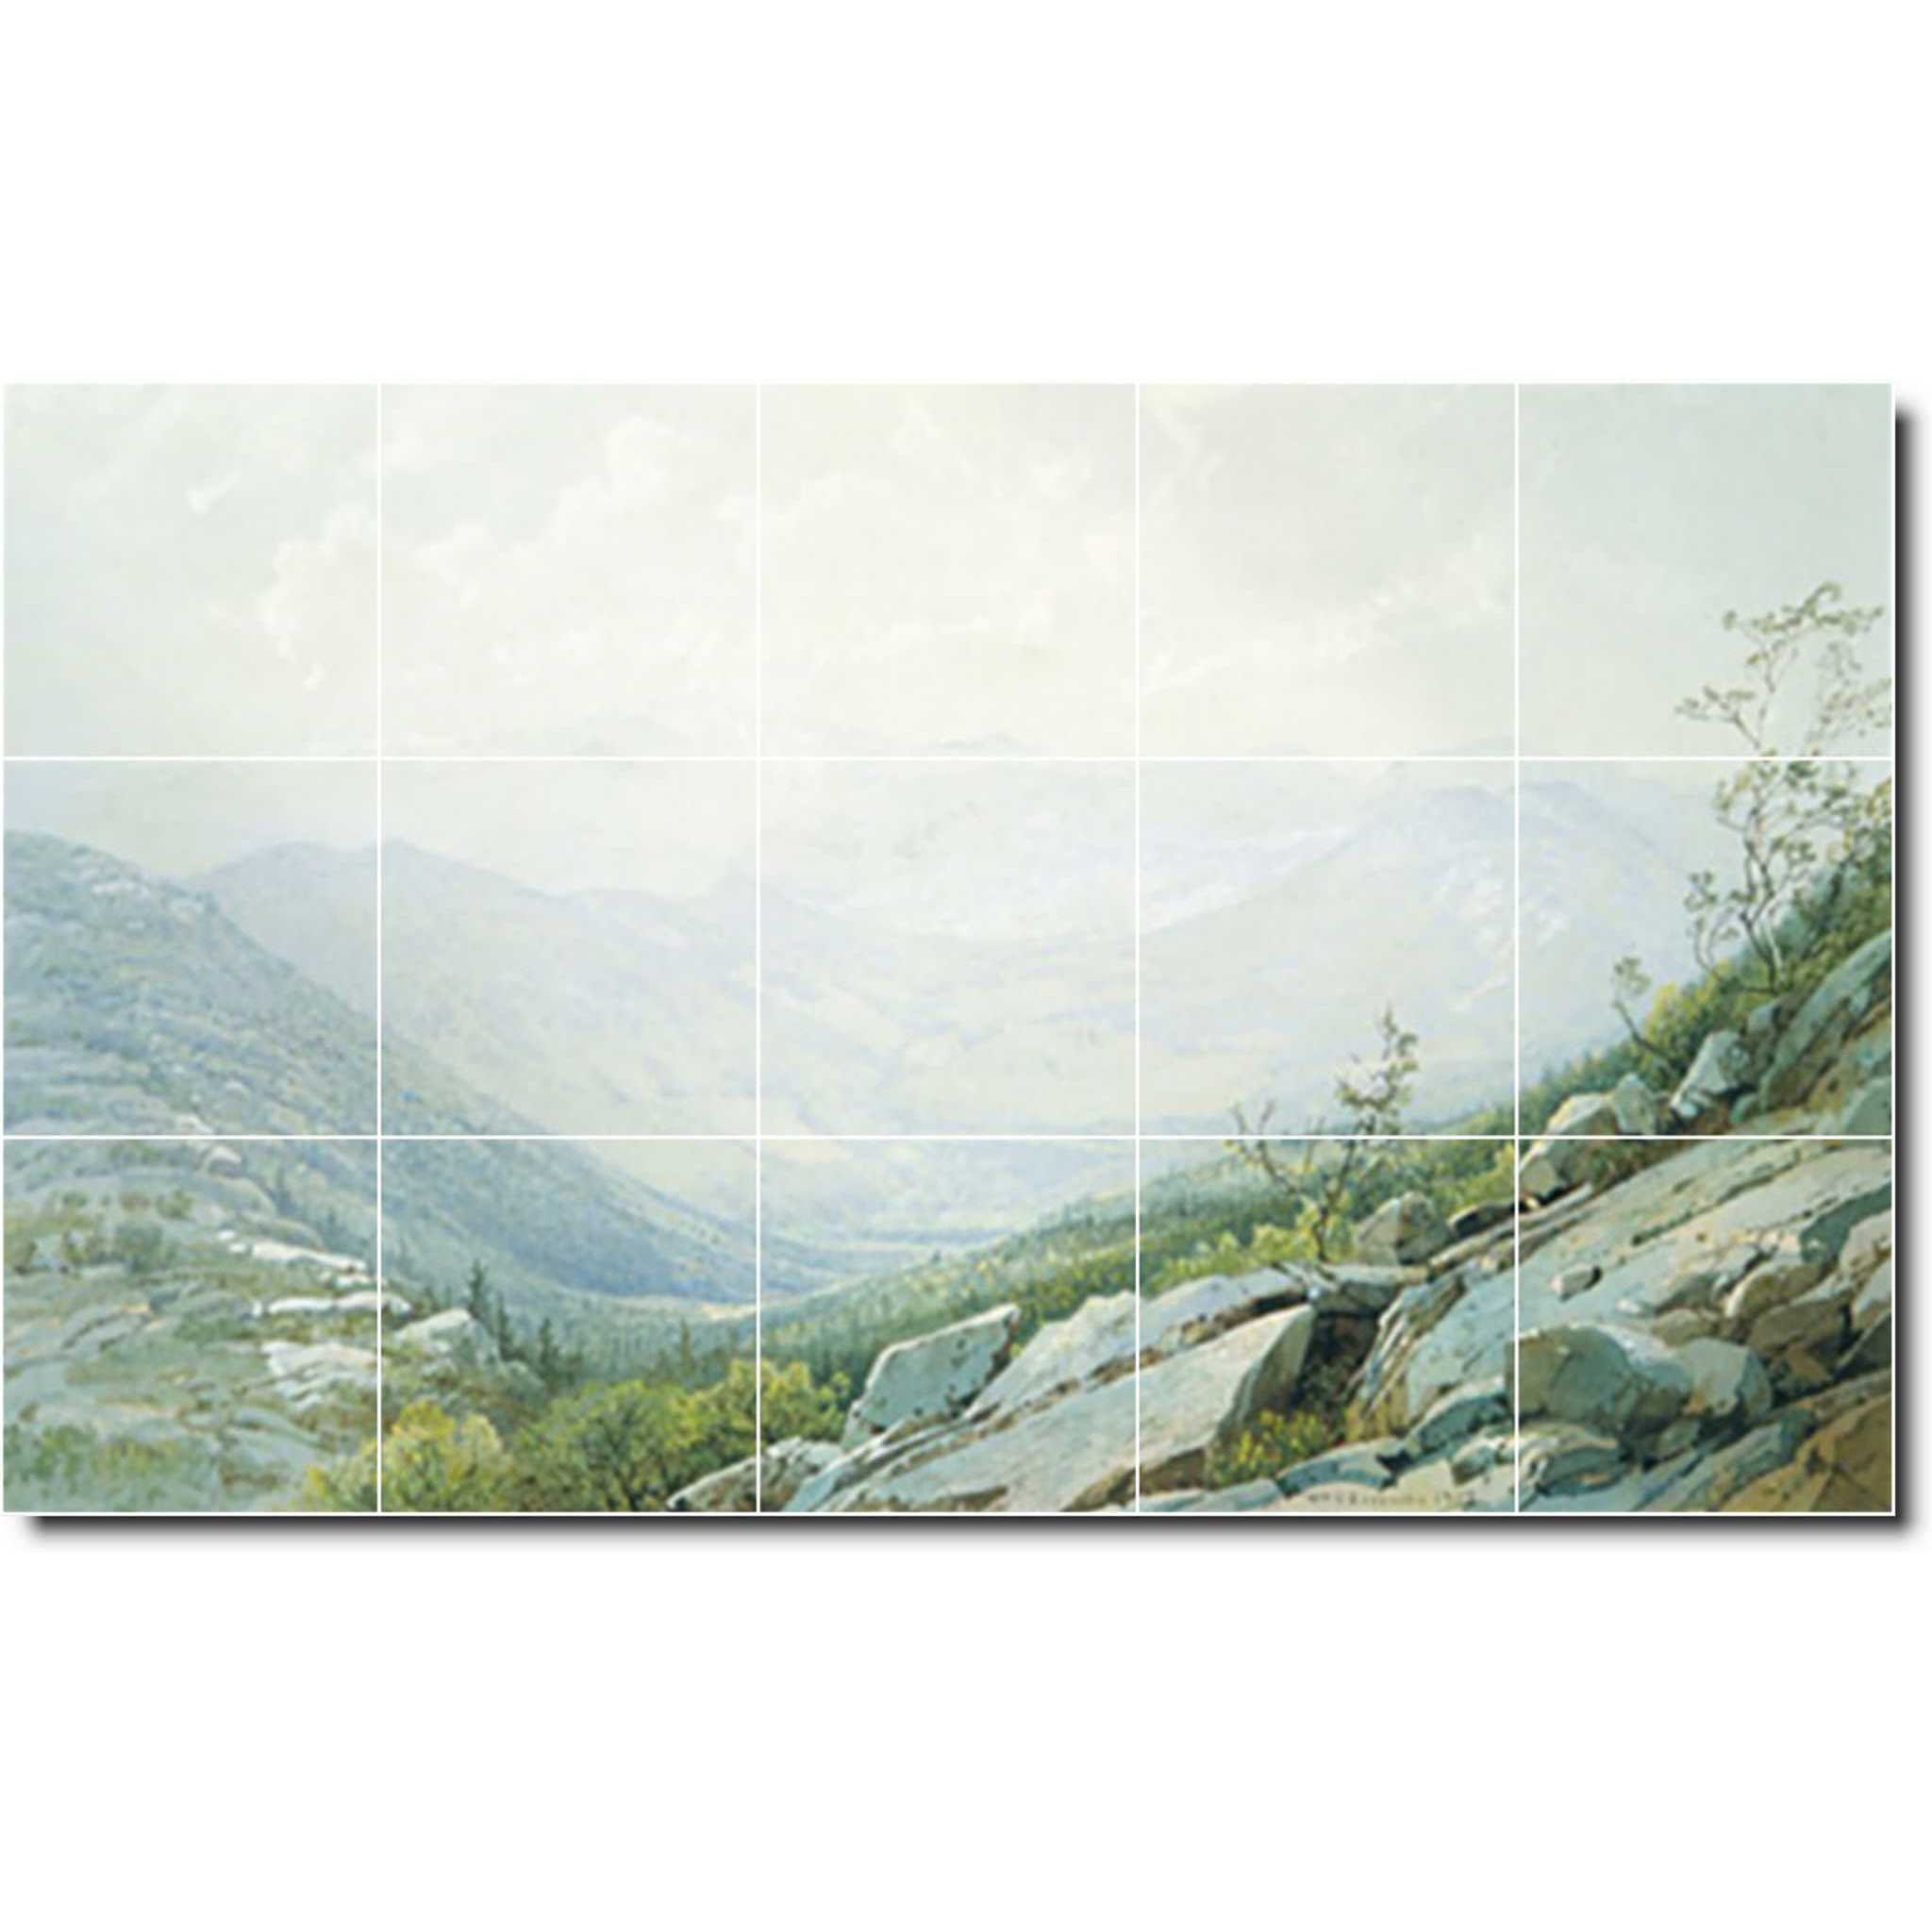 william richards landscape painting ceramic tile mural p07493